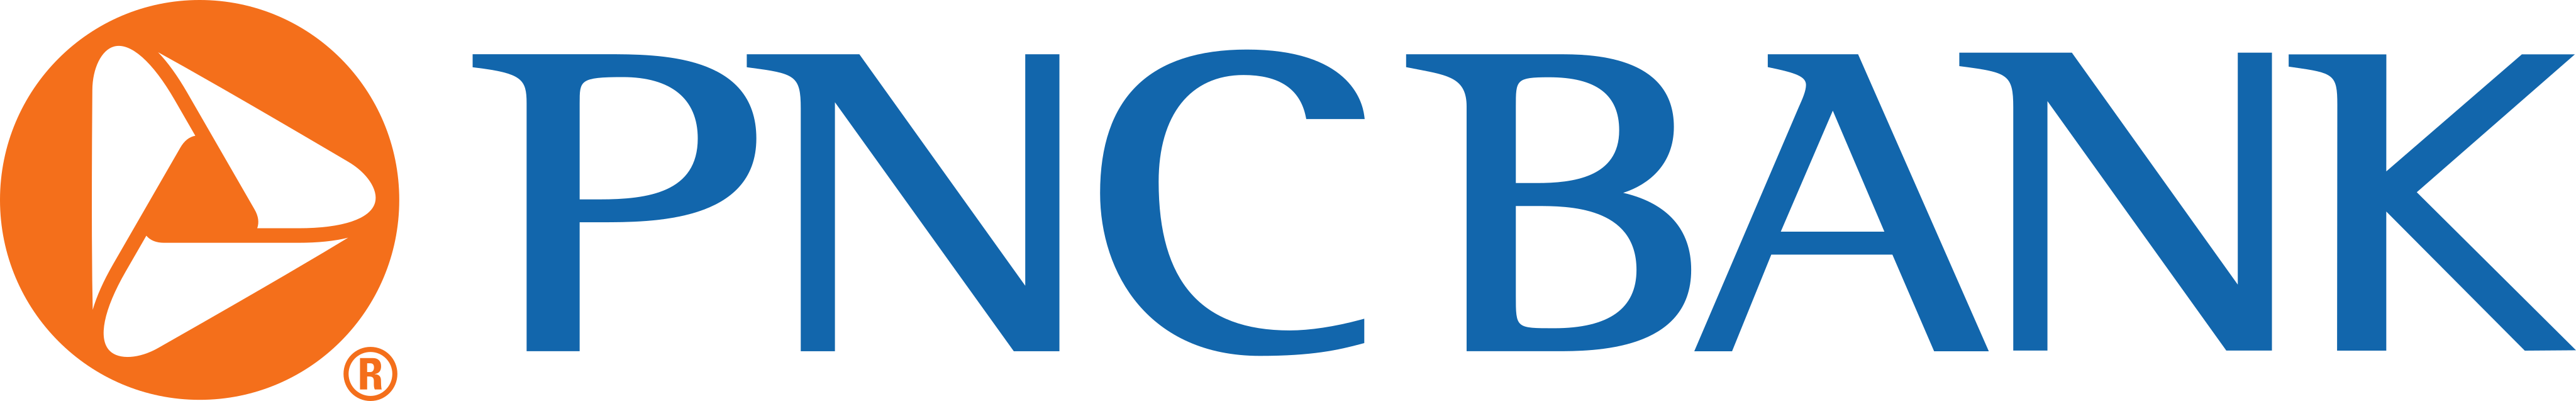 PNC bank logo